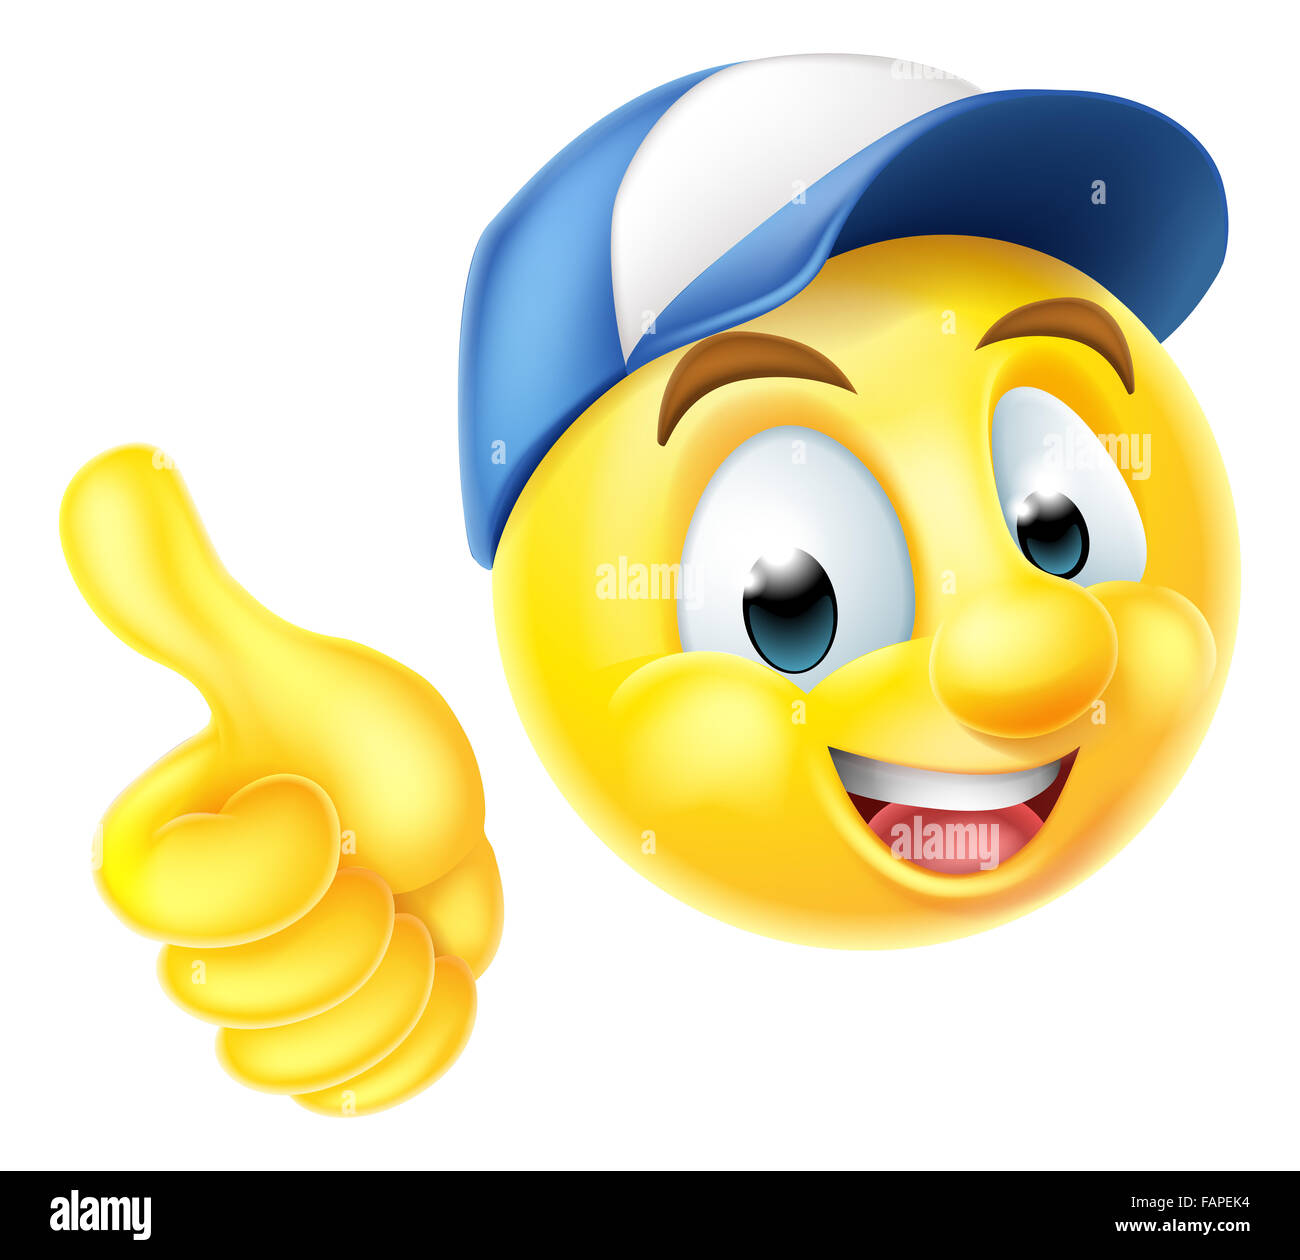 Comicfigur Emoji Emoticon Smiley Gesicht Tragt Eine Arbeitnehmer Mutze Und Einen Daumen Nach Oben Geben Stockfotografie Alamy